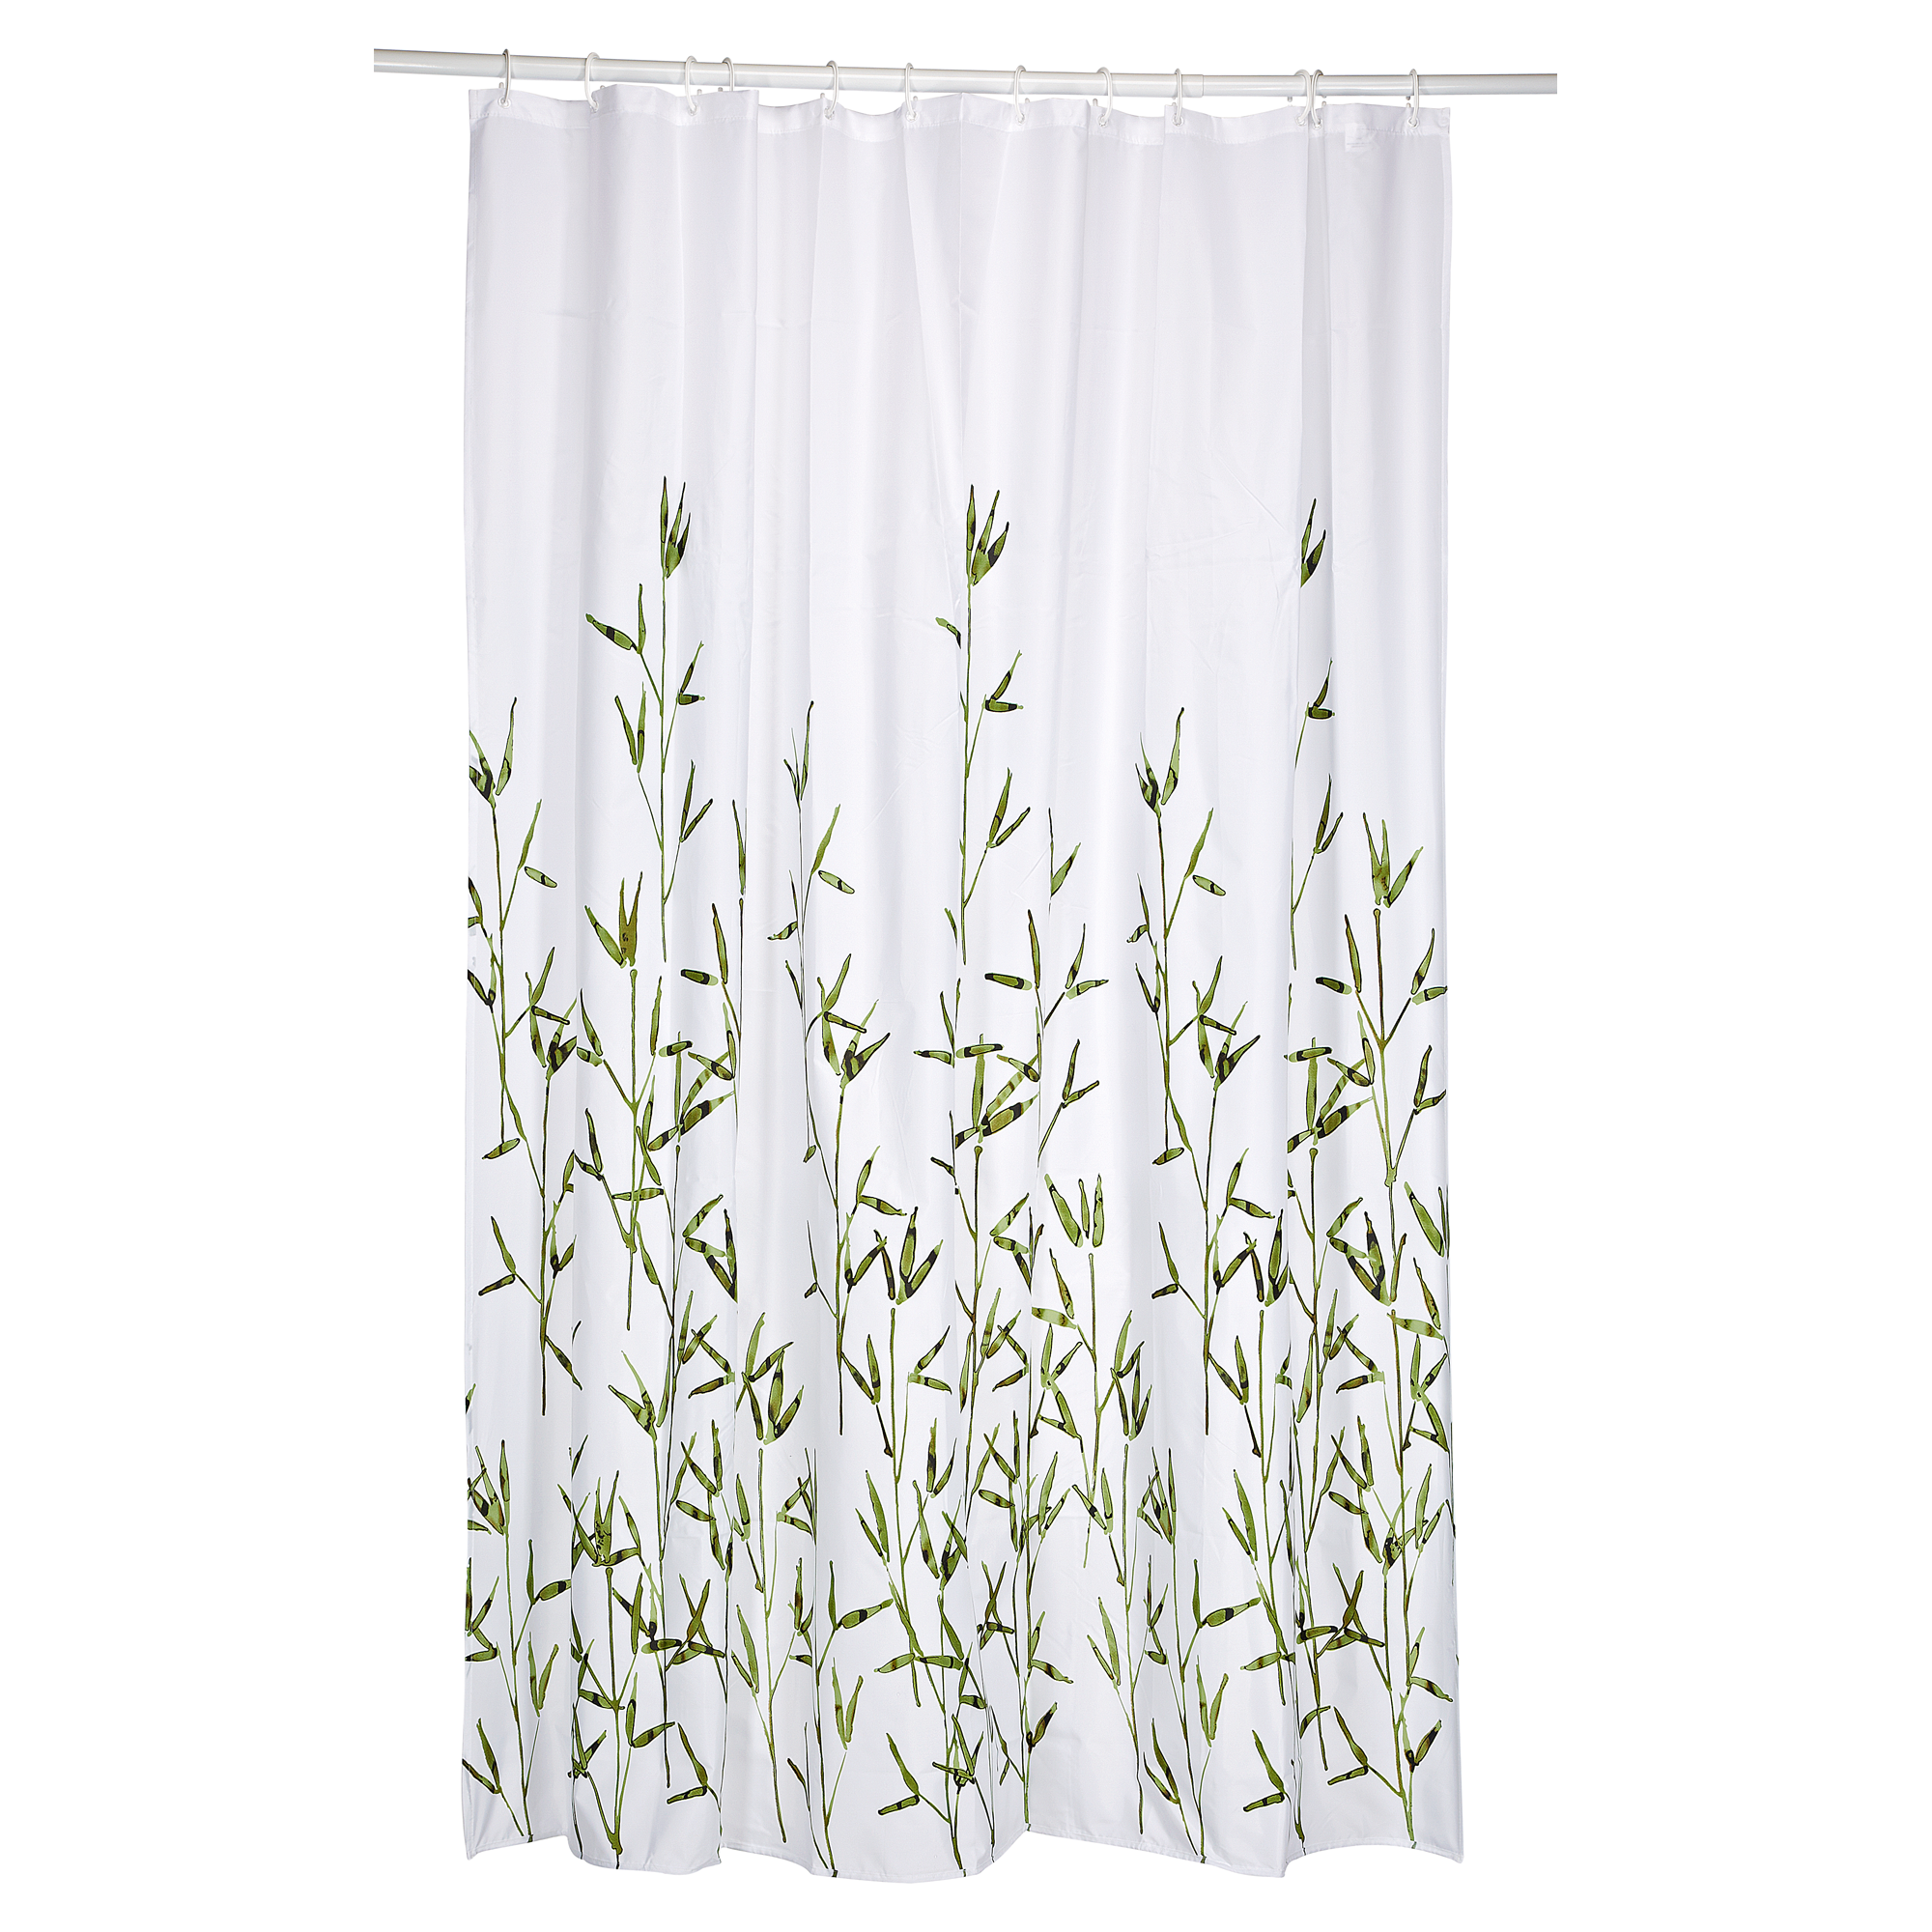 Duschvorhang Textil Bambus 200 x 180 cm + product picture